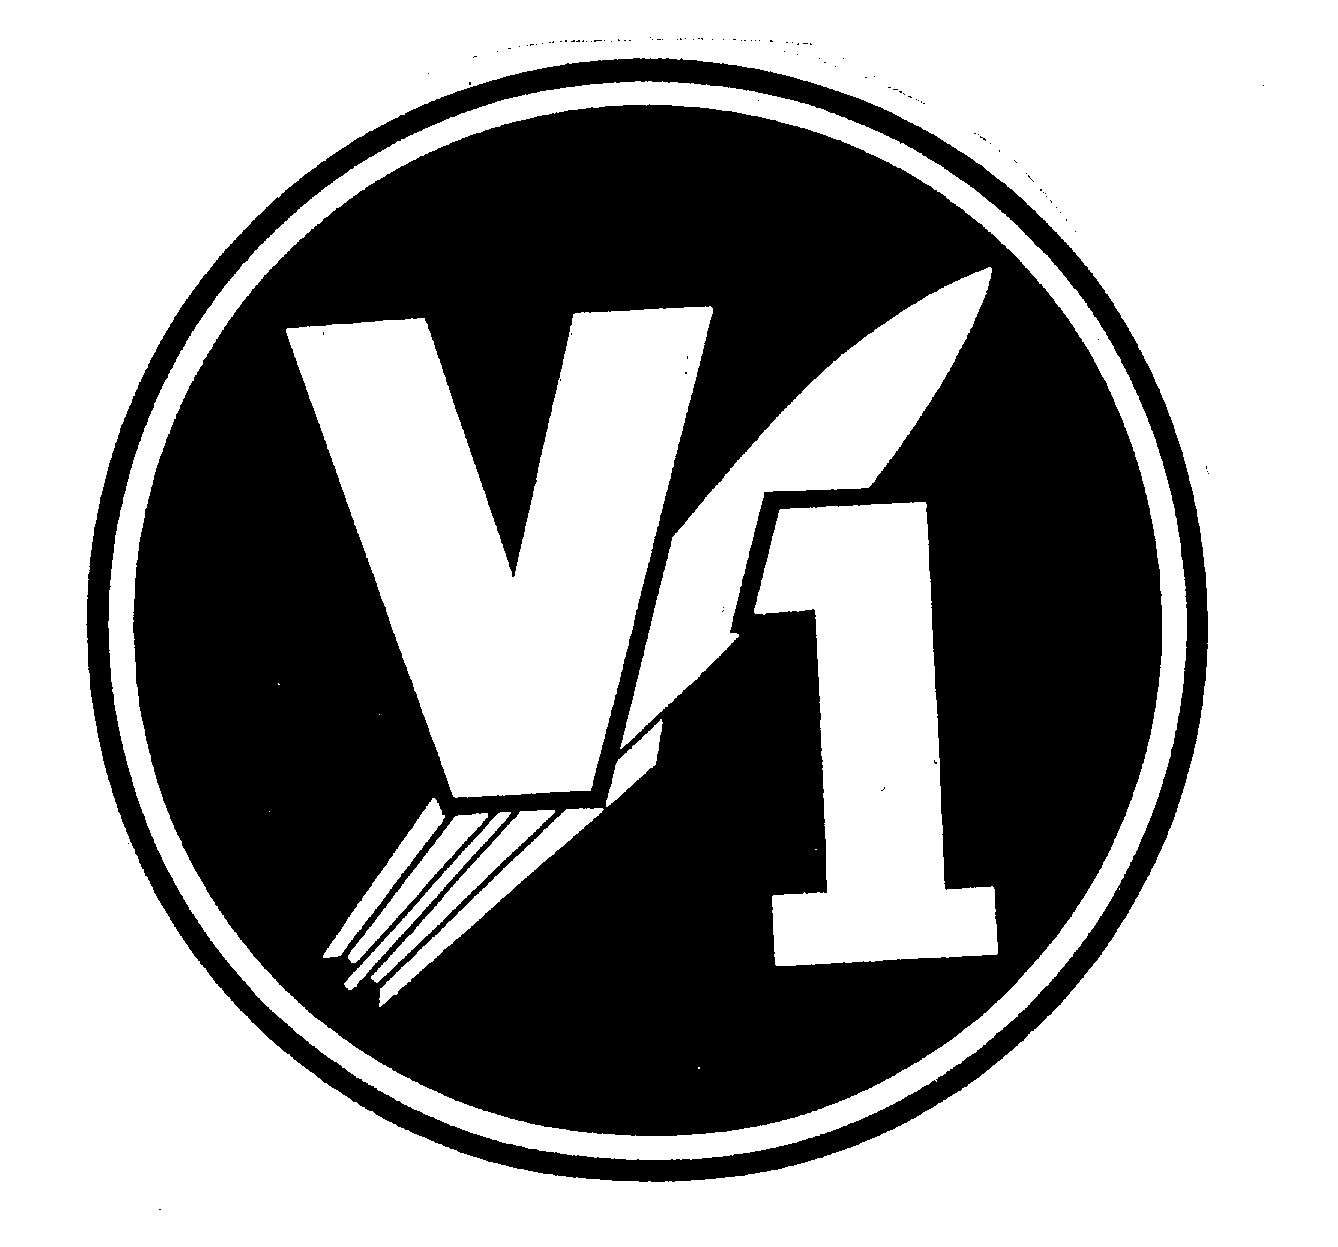 V1